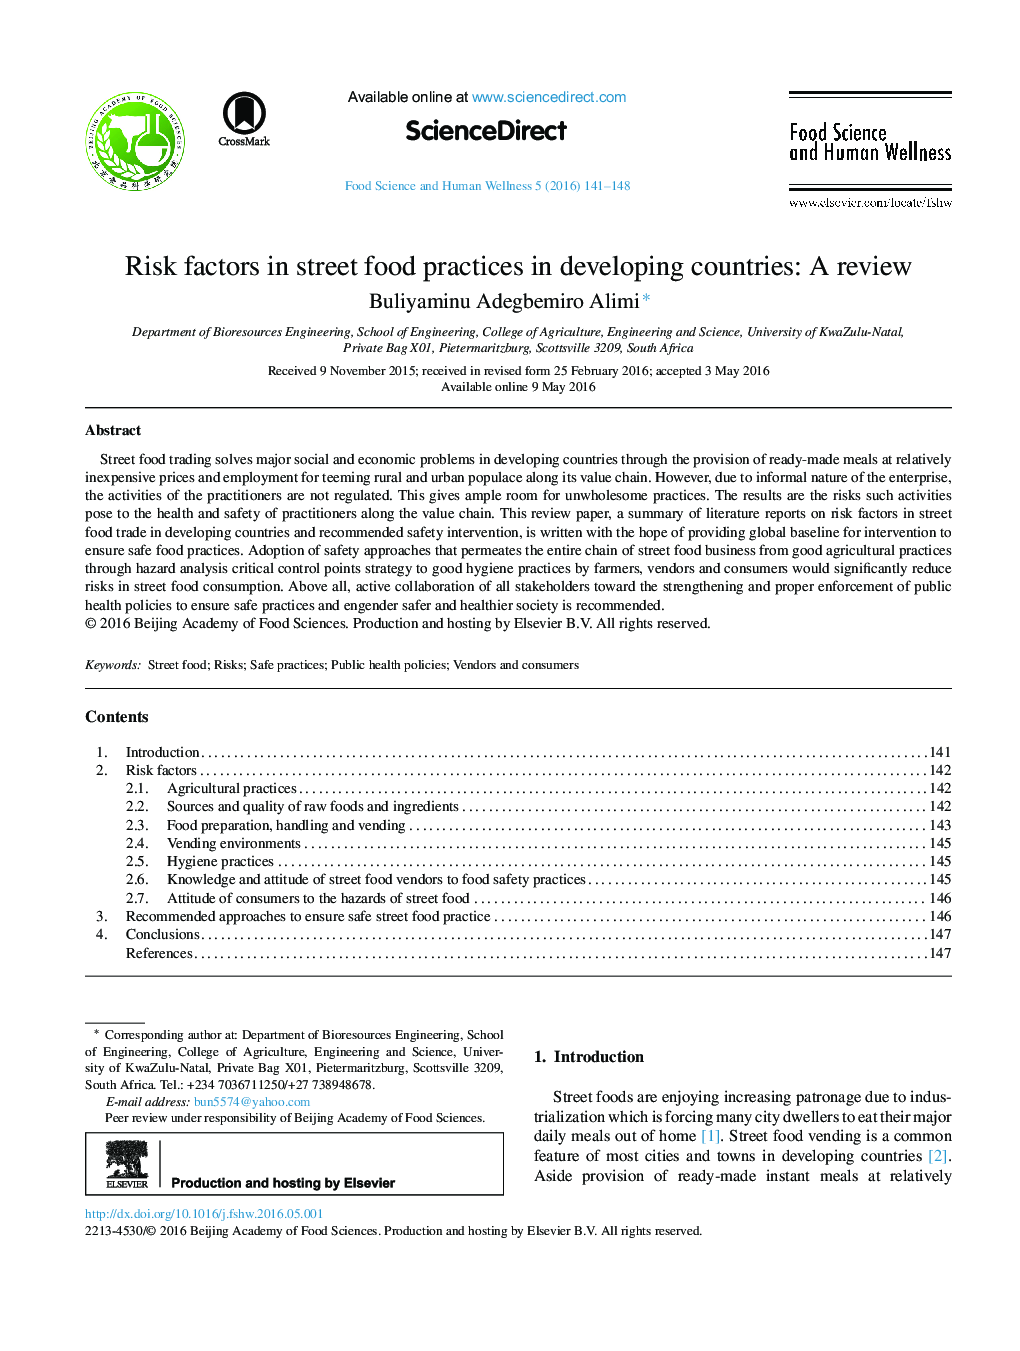 عوامل خطر در شیوه های مواد غذایی خیابانی در کشورهای در حال توسعه: مروری